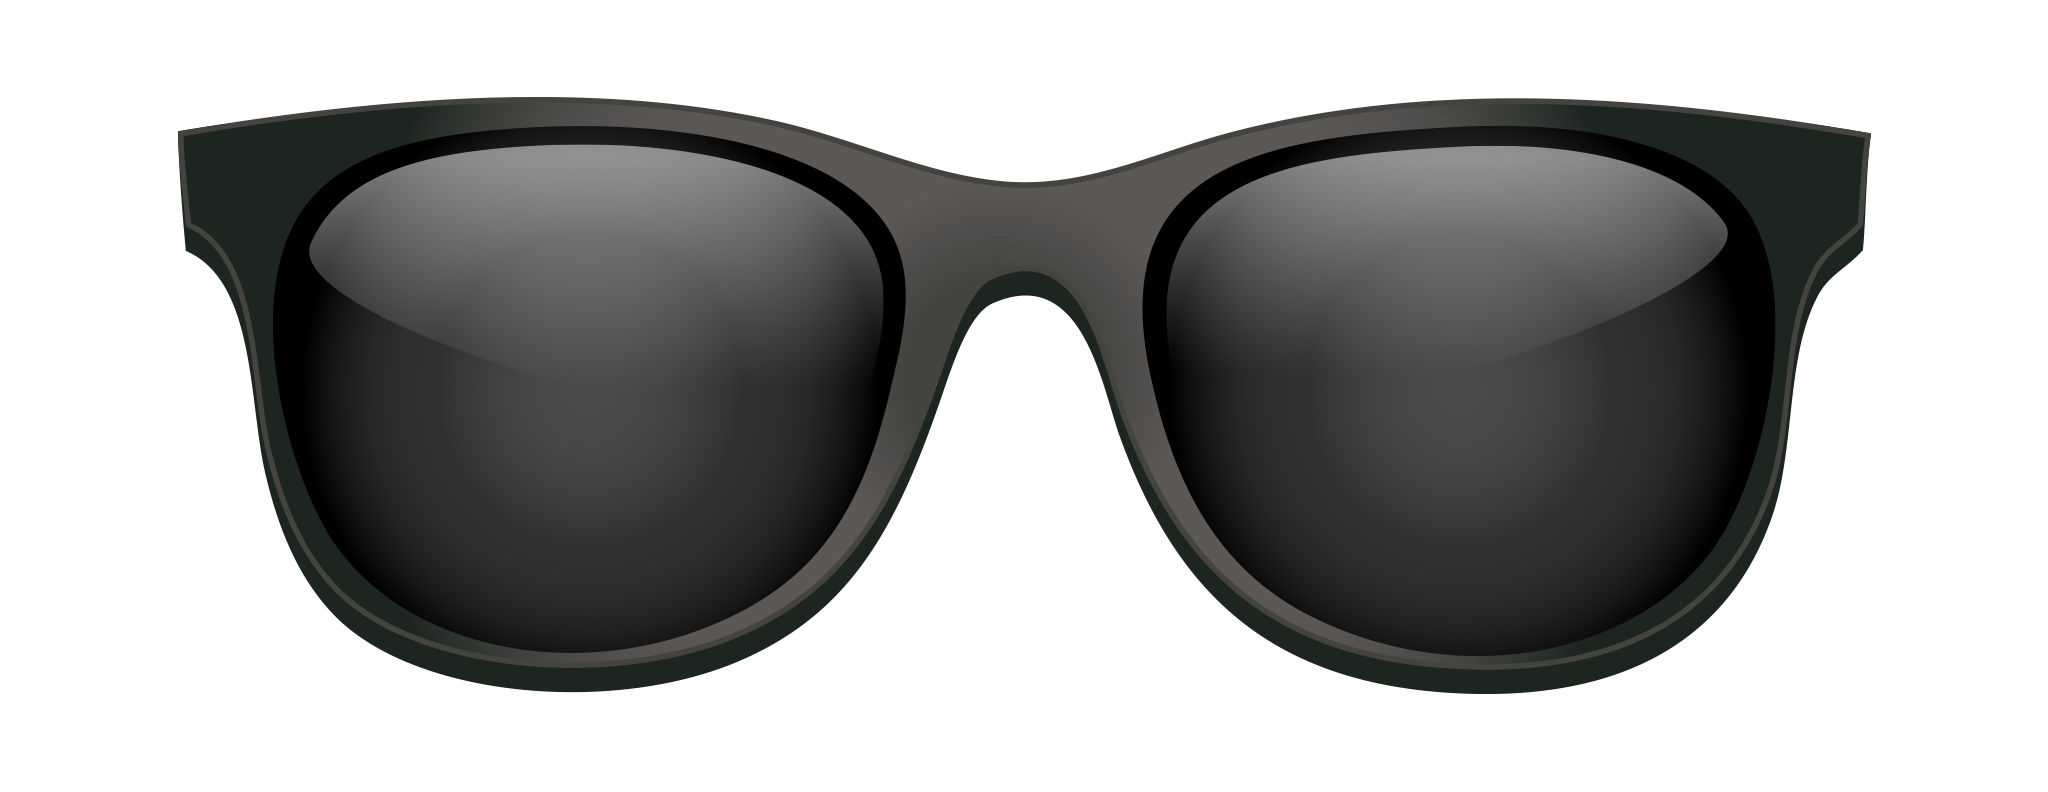 Picart Sunglasses PNG gambar